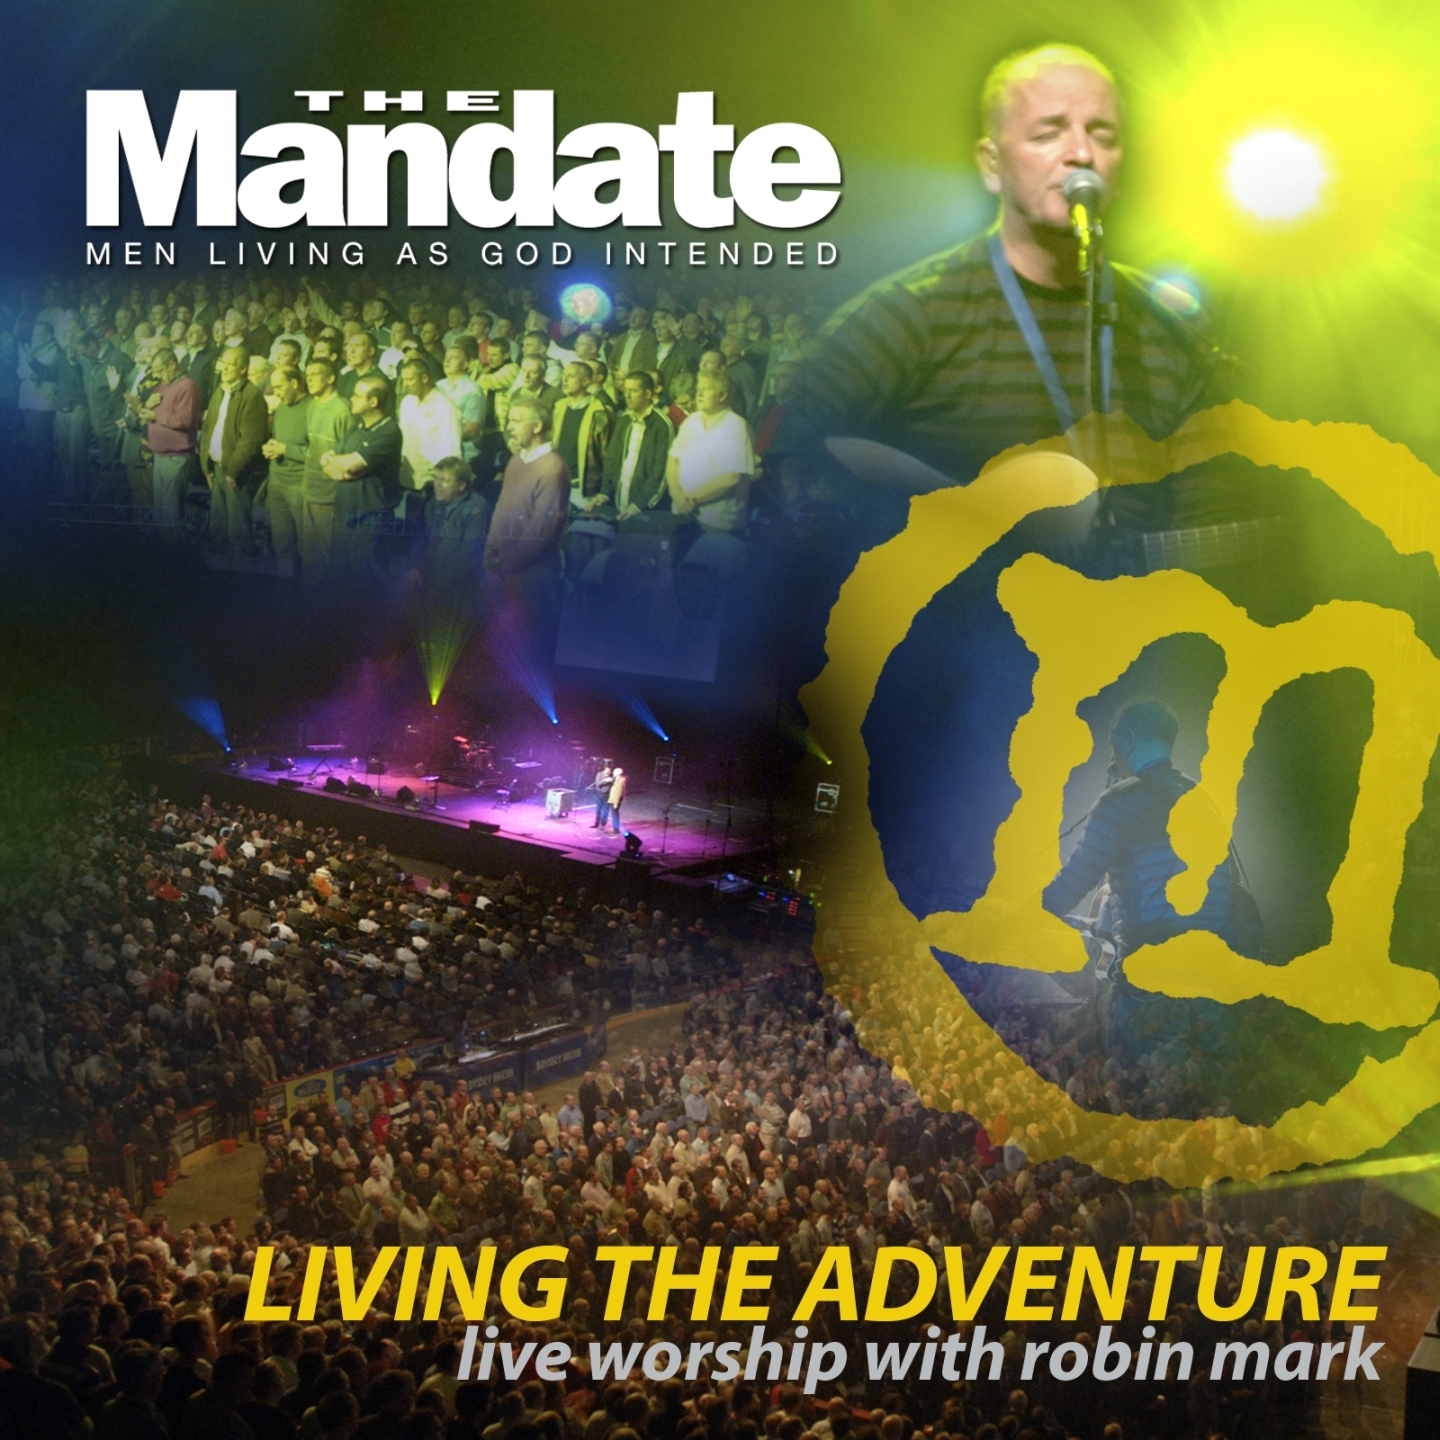 Living the Adventure - Mandate 2007